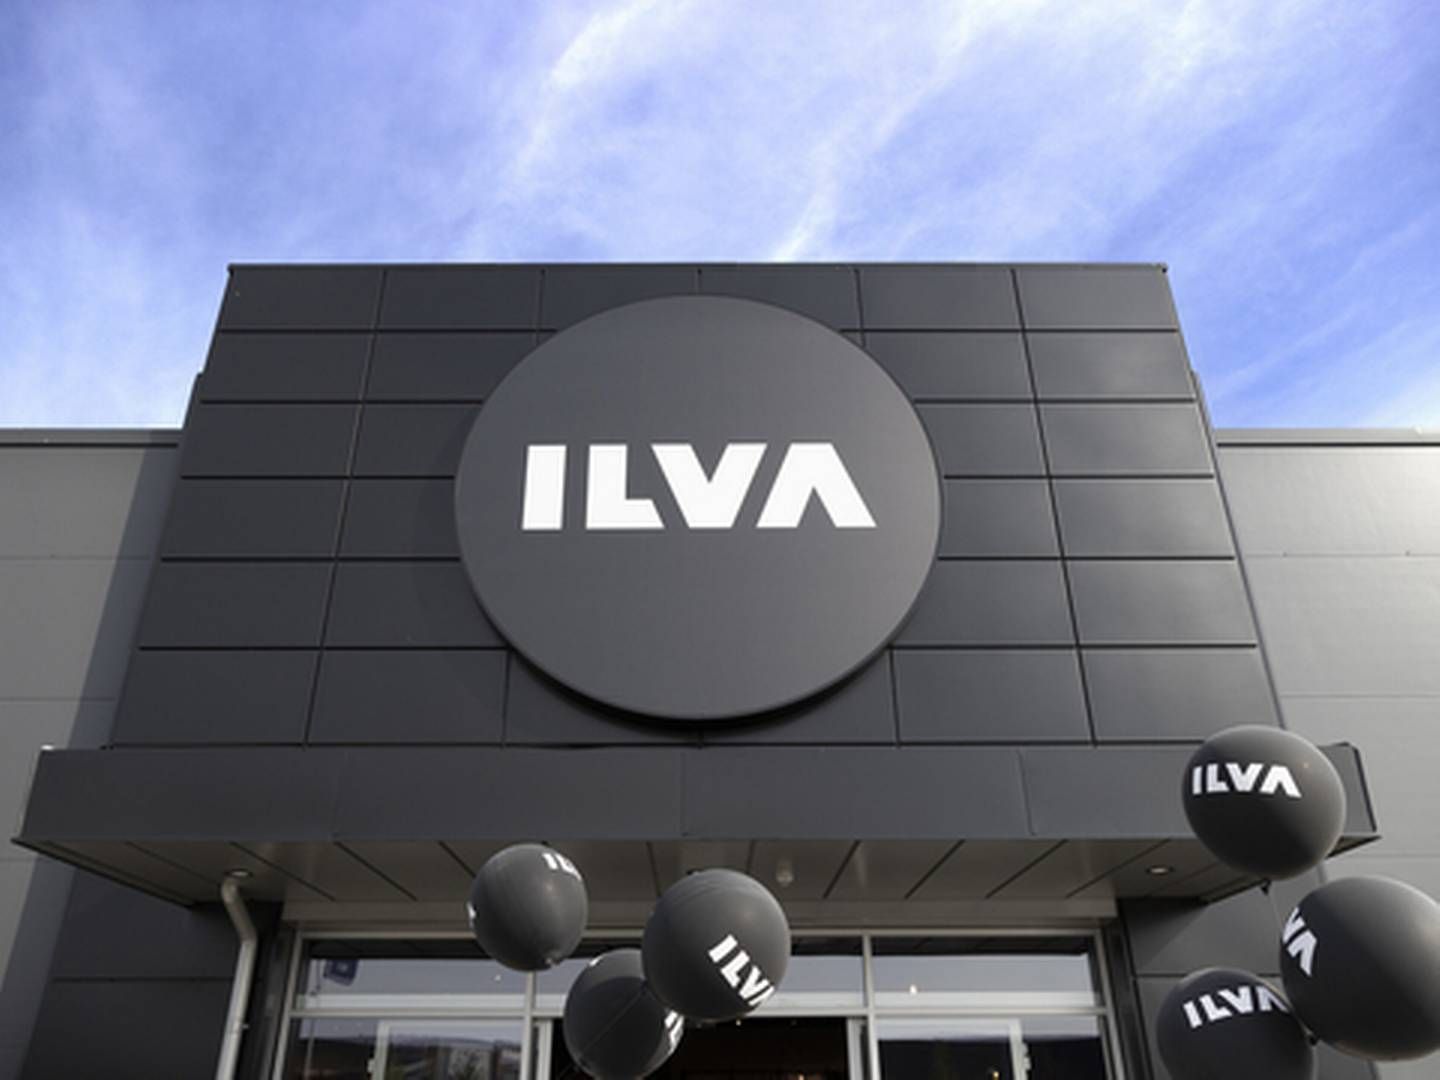 Møbelhuset Ilva er en del af Lars Larsen Group og har omkring 40 bolighuse i Danmark og en håndfuld i Sverige. | Foto: PR/Ilva